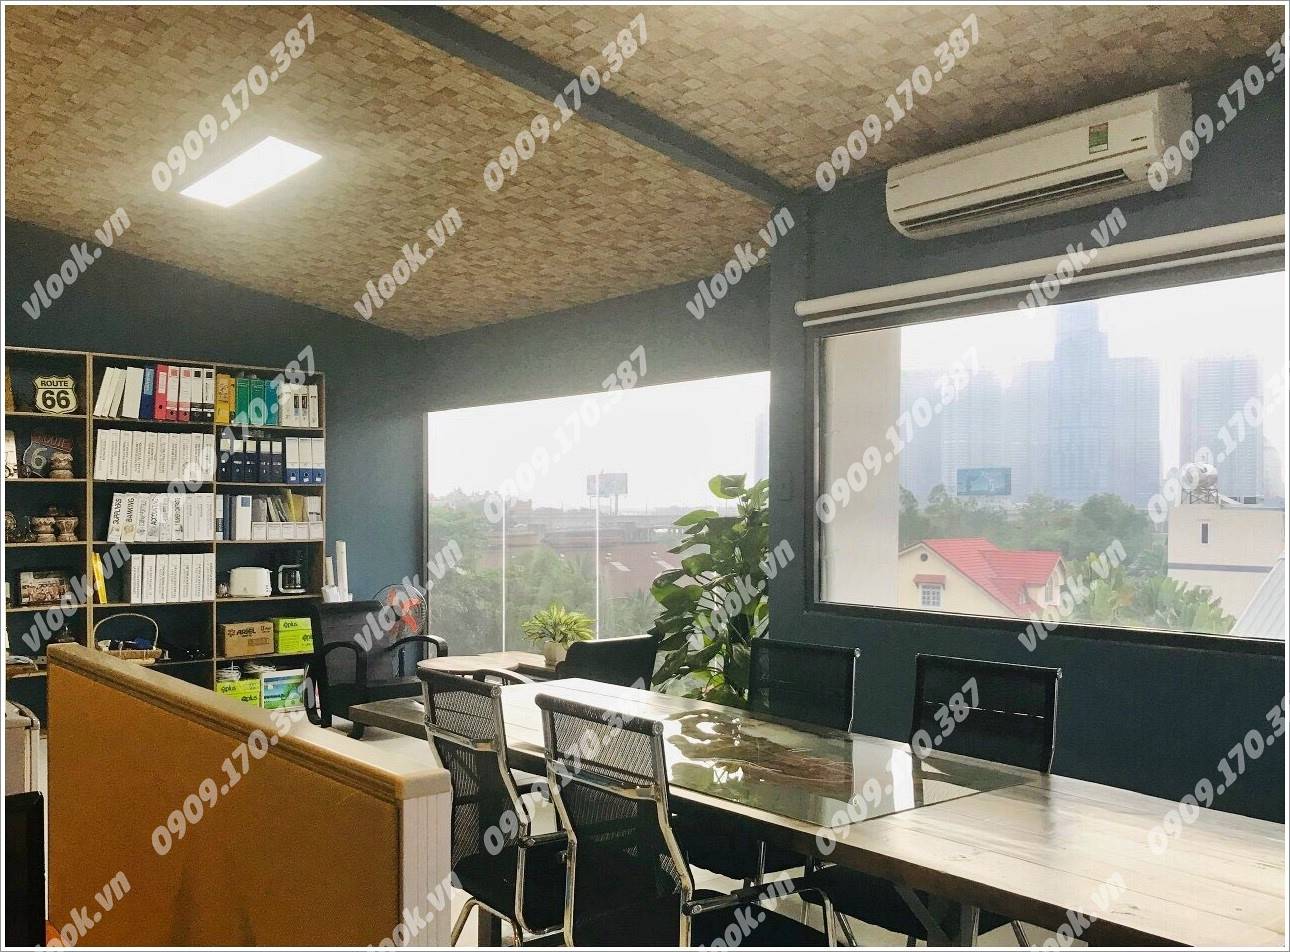 Cao ốc văn phòng cho thuê tòa nhà Le garden Office, Quốc Hương, Quận 2, TPHCM - vlook.vn